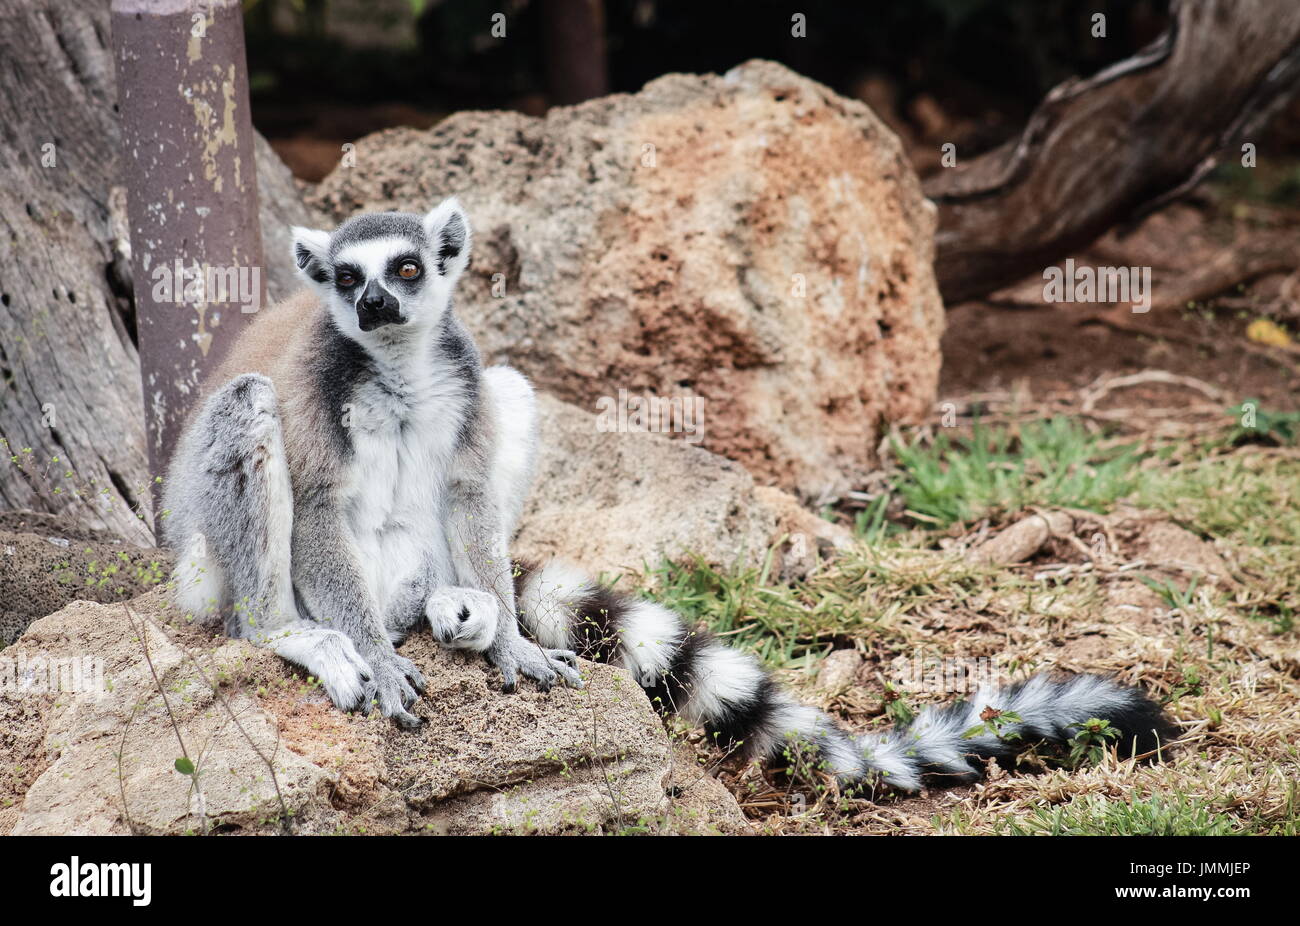 L'anello-tailed lemur (Lemur catta) è un grande primate strepsirrhine e più riconosciuti lemur dovuta alla sua lunga, in bianco e nero di inanellare coda. Foto Stock